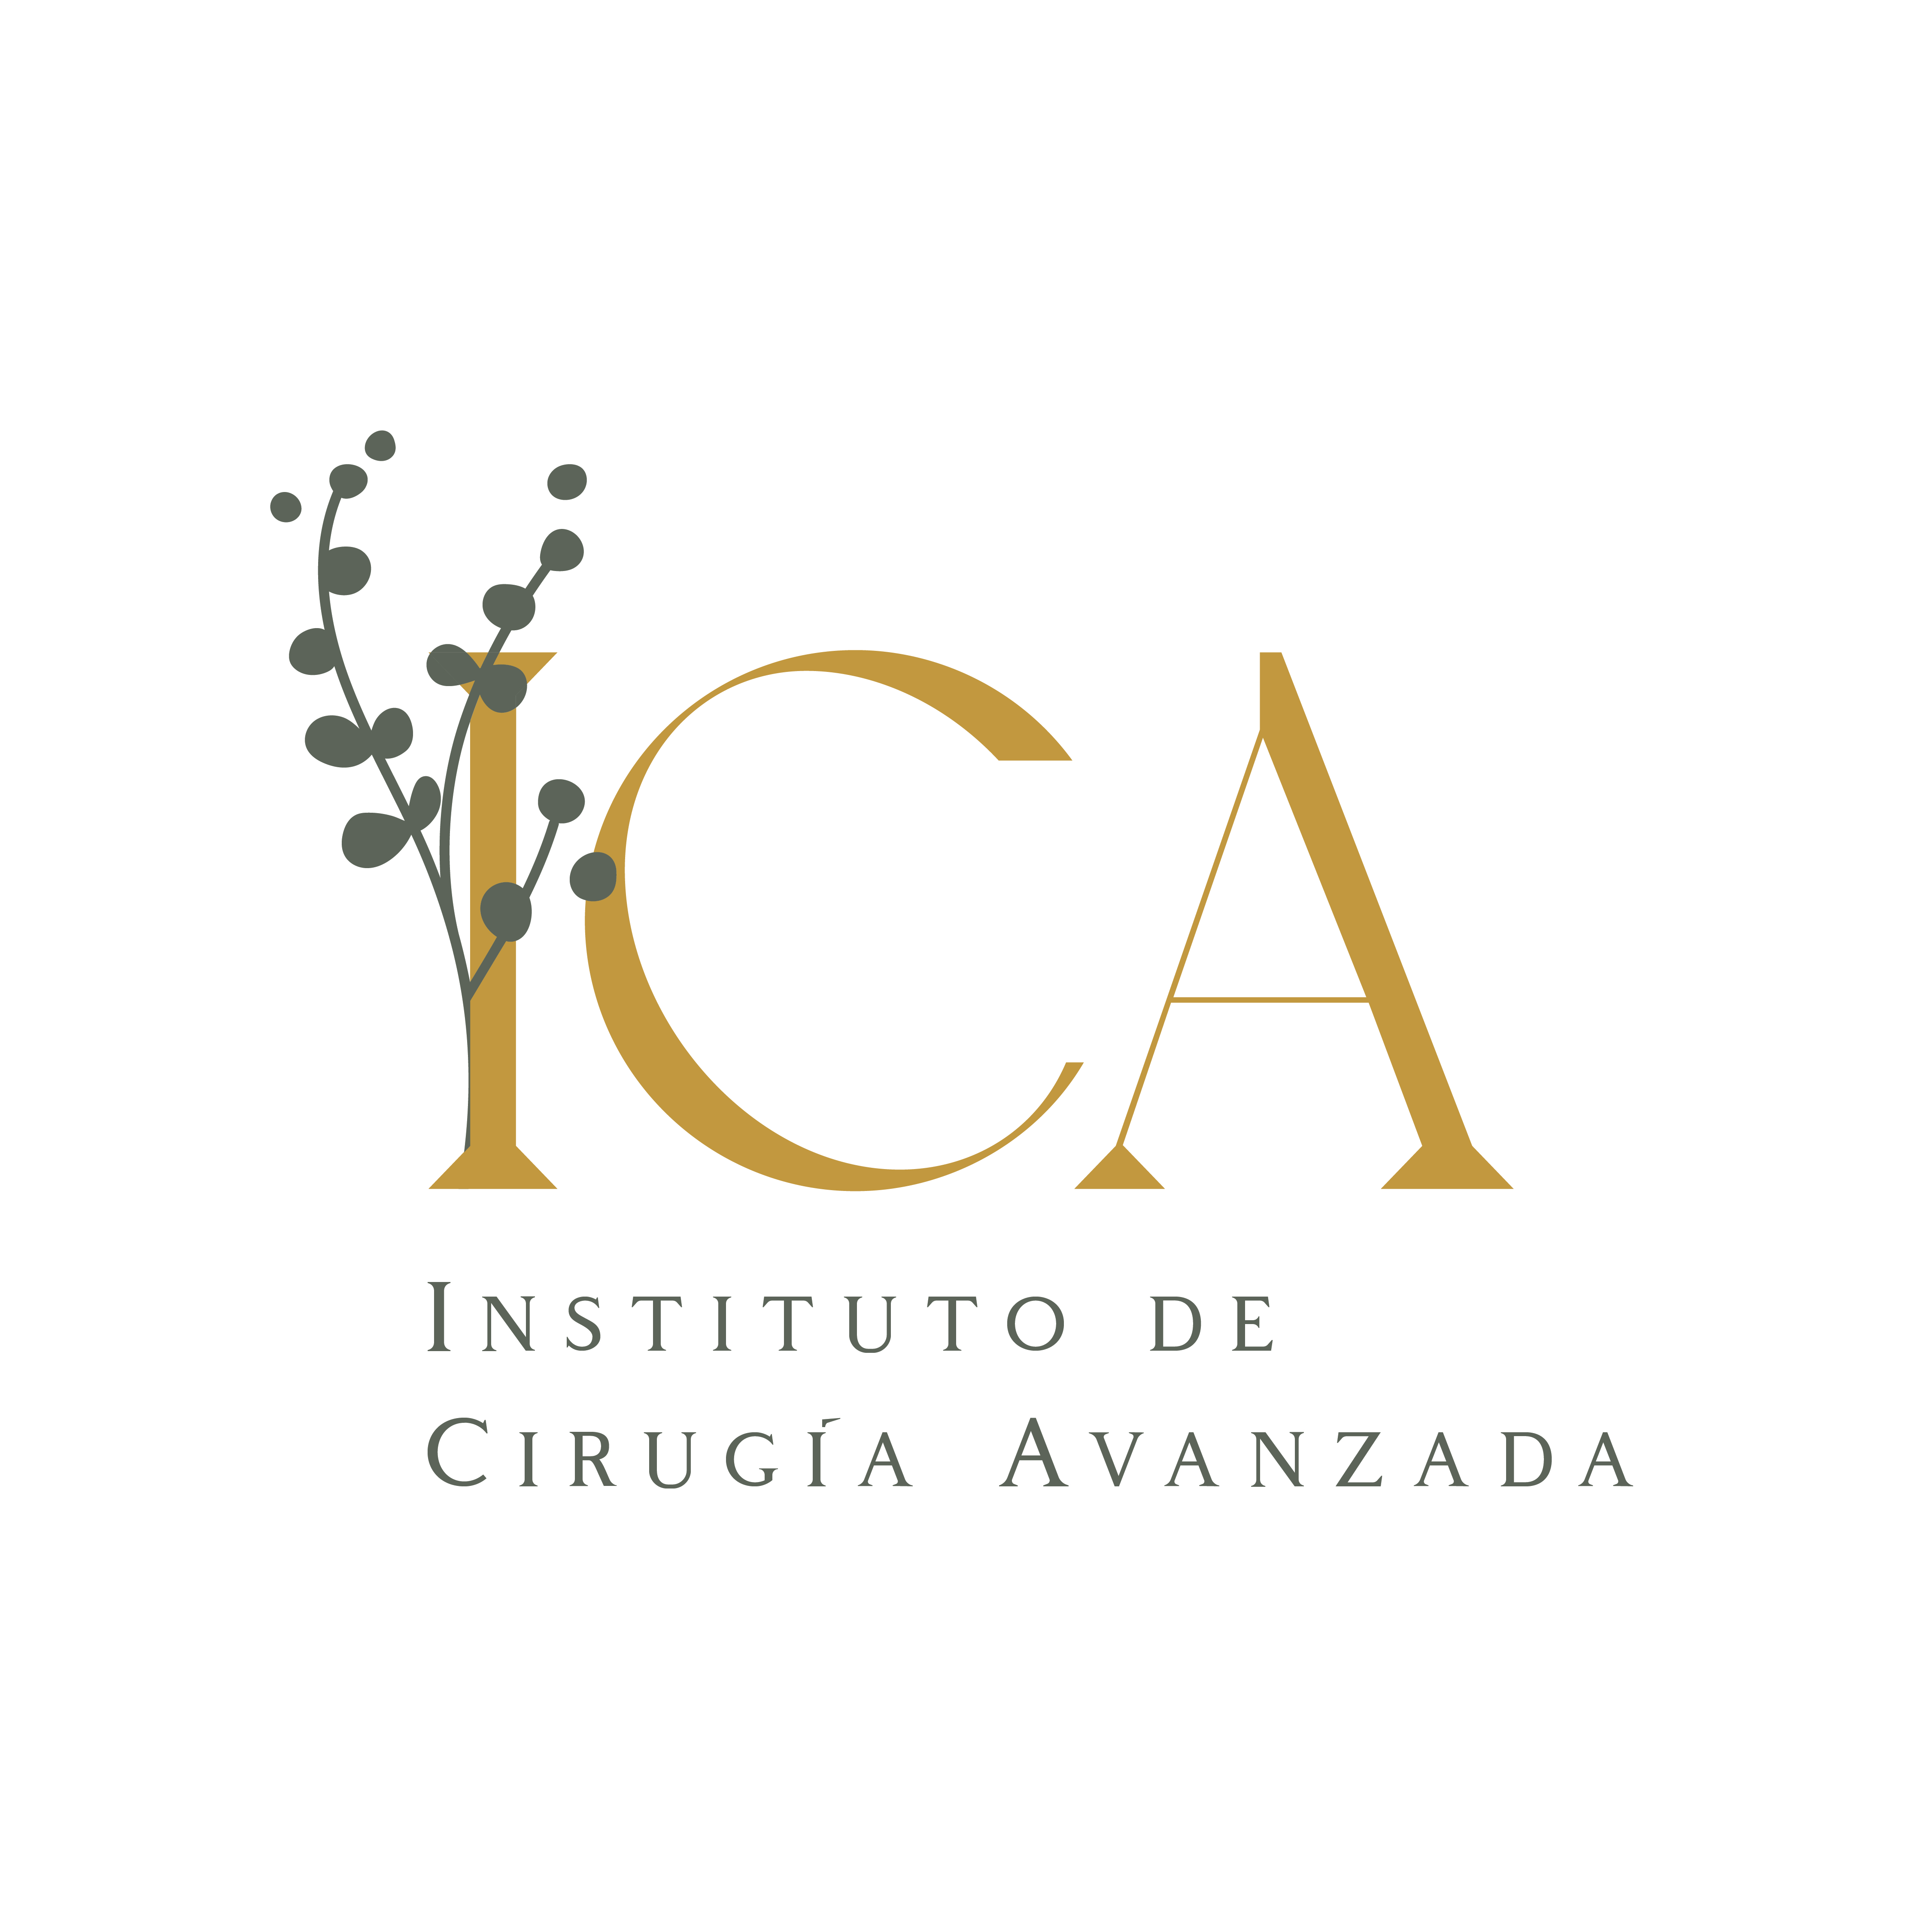 ICA Instituto de Cirugia Avanzada